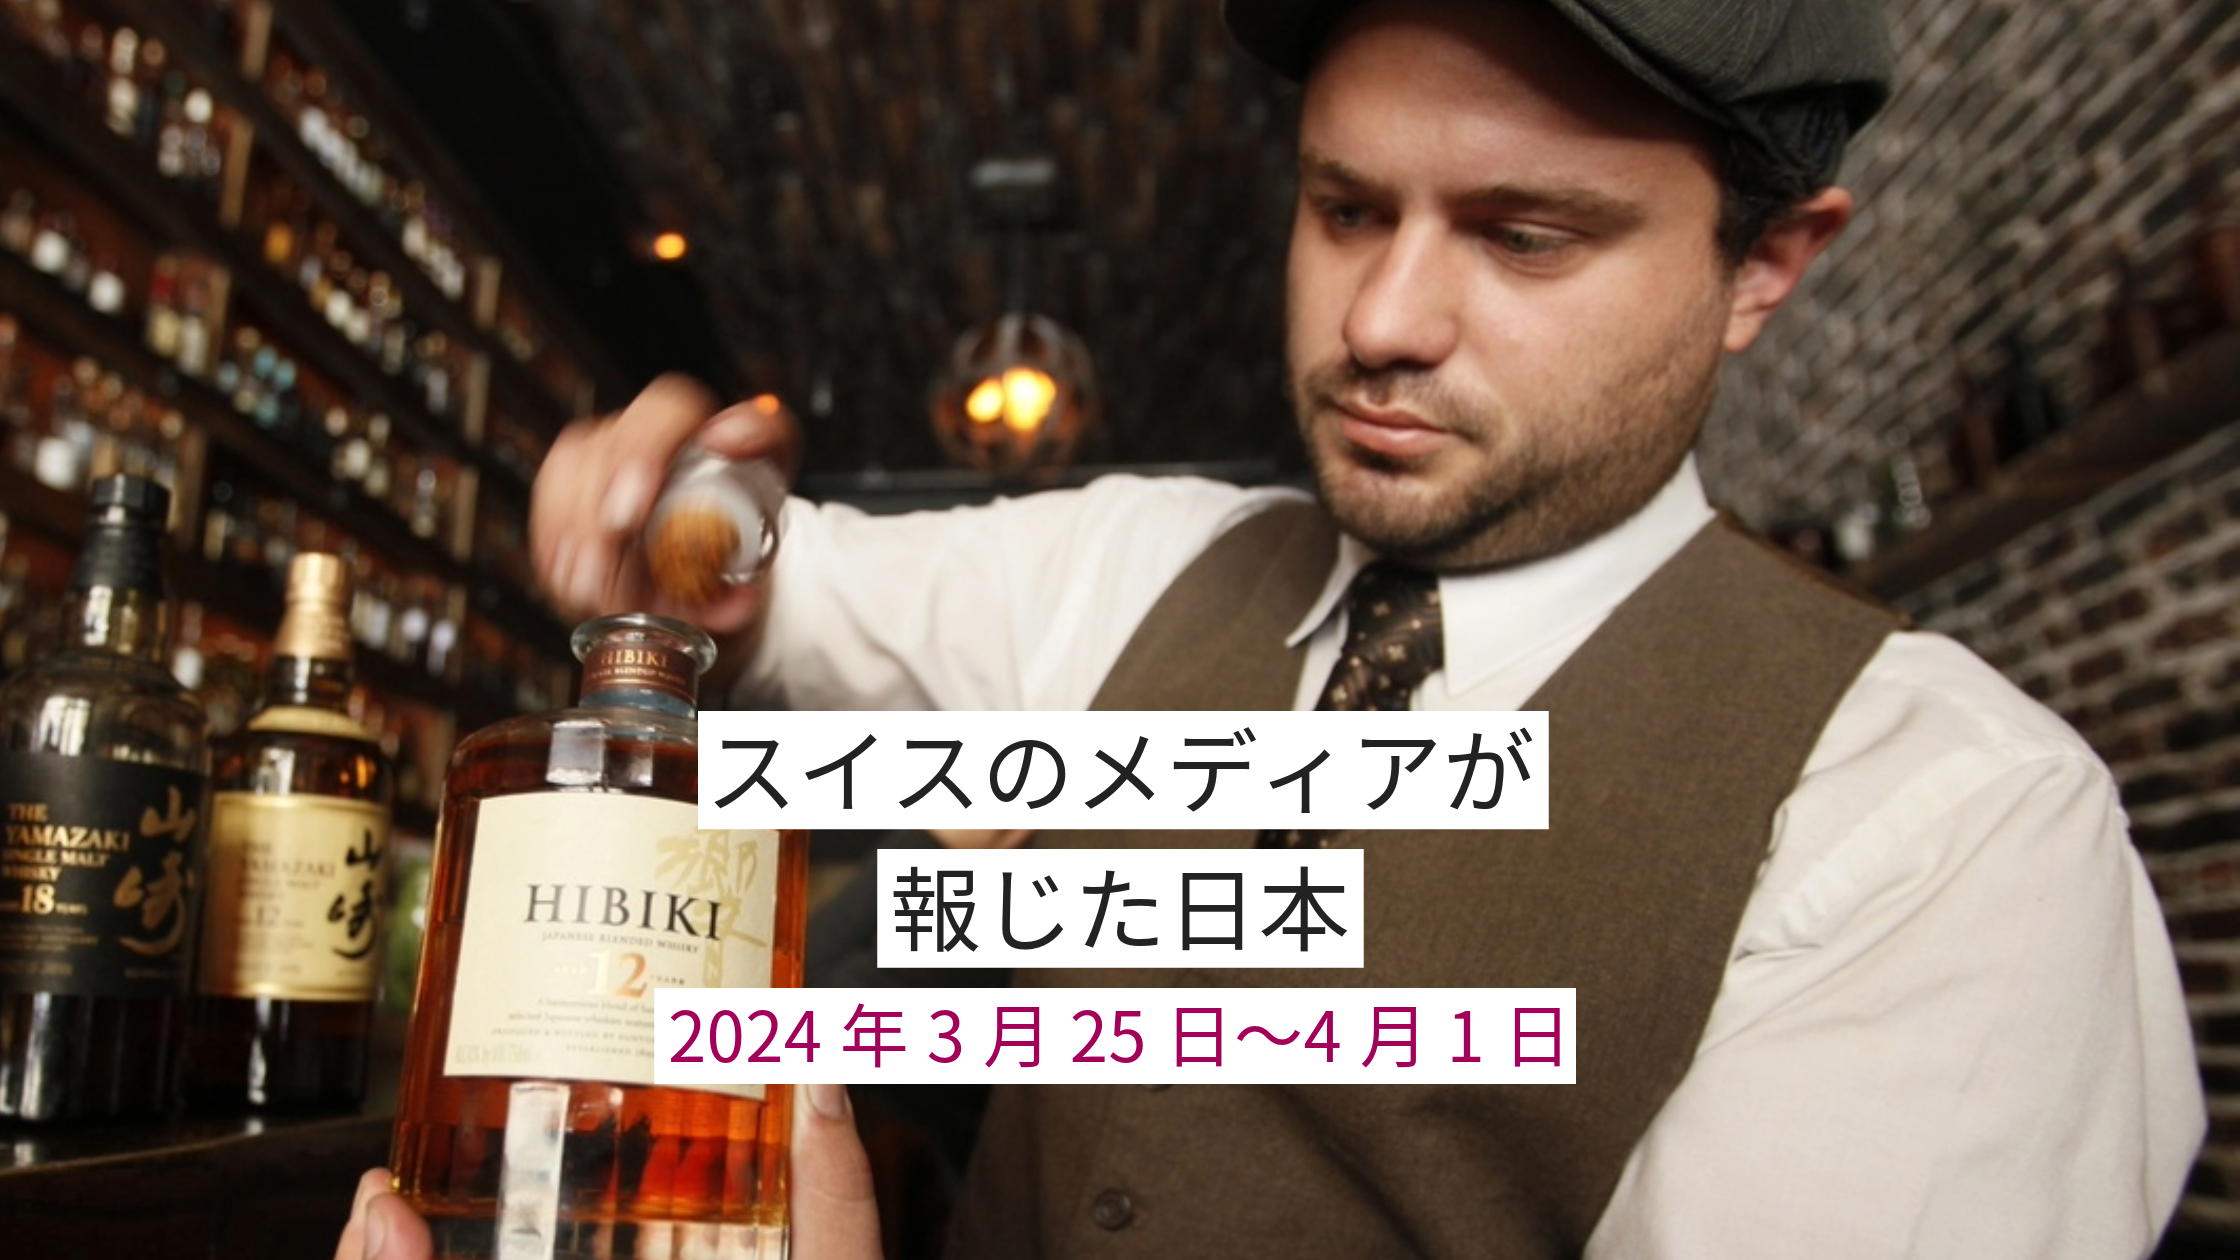 日本産ウイスキー「HIBIKI」を持つバーテンダー